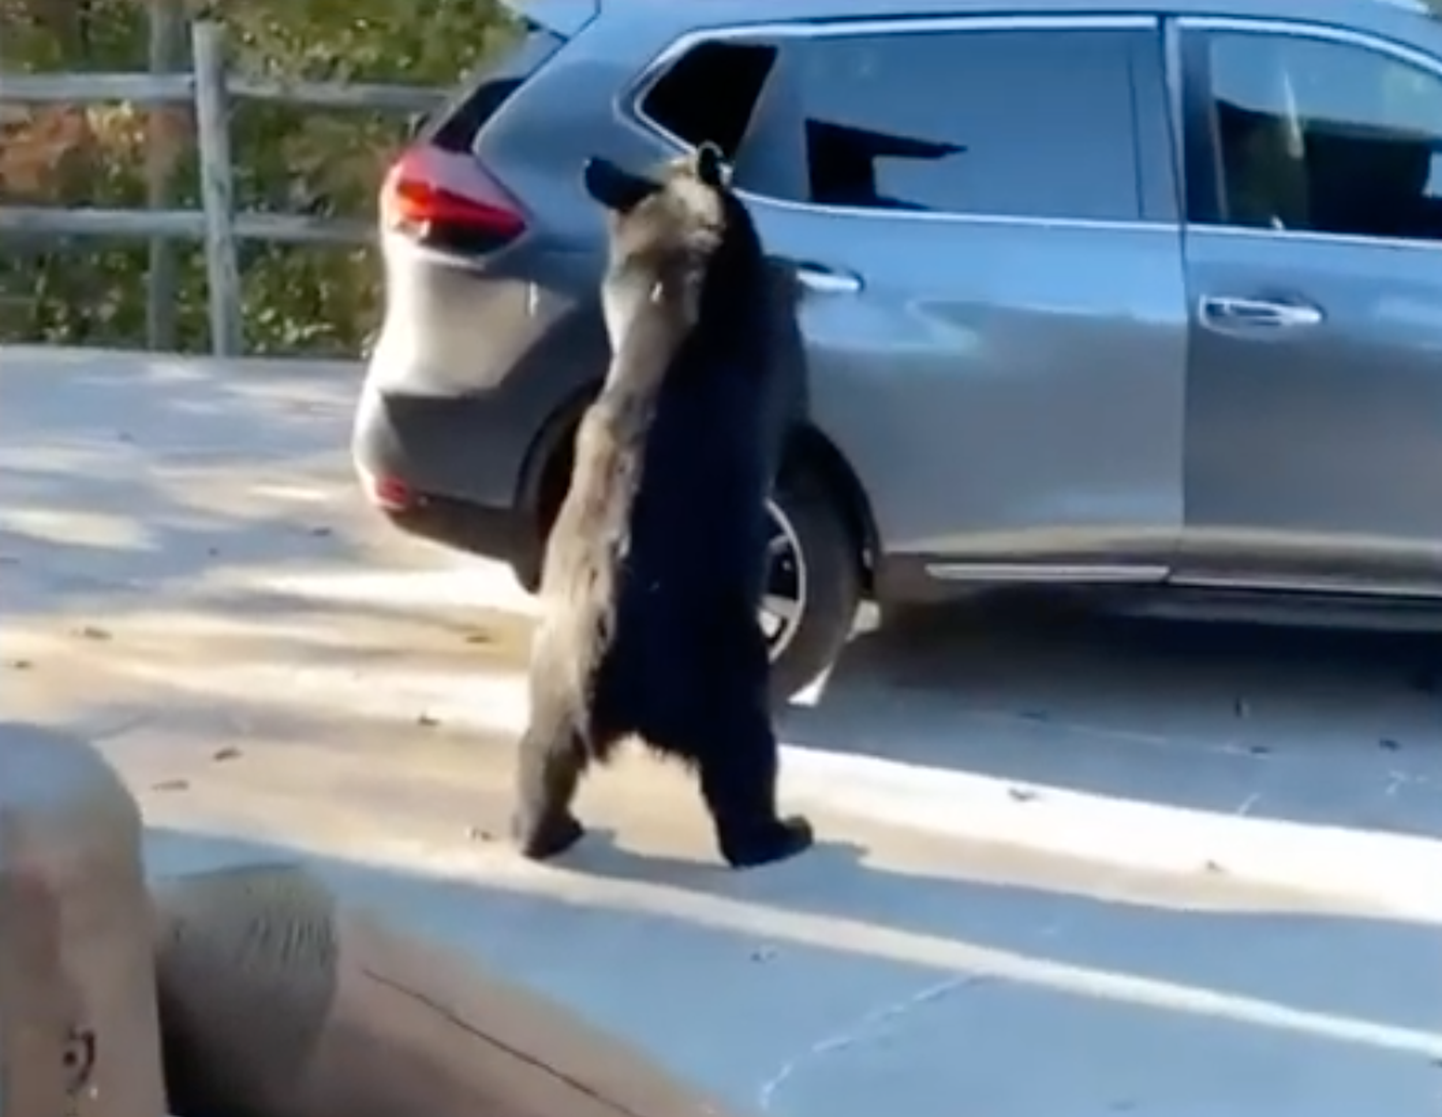 Kas karu soovis autoust avades ka päriselt perega koos sõitma minna ei ole teada. Arvatavasti meelitas teda ligi autos olnud lahtine maapähklivõi purk.